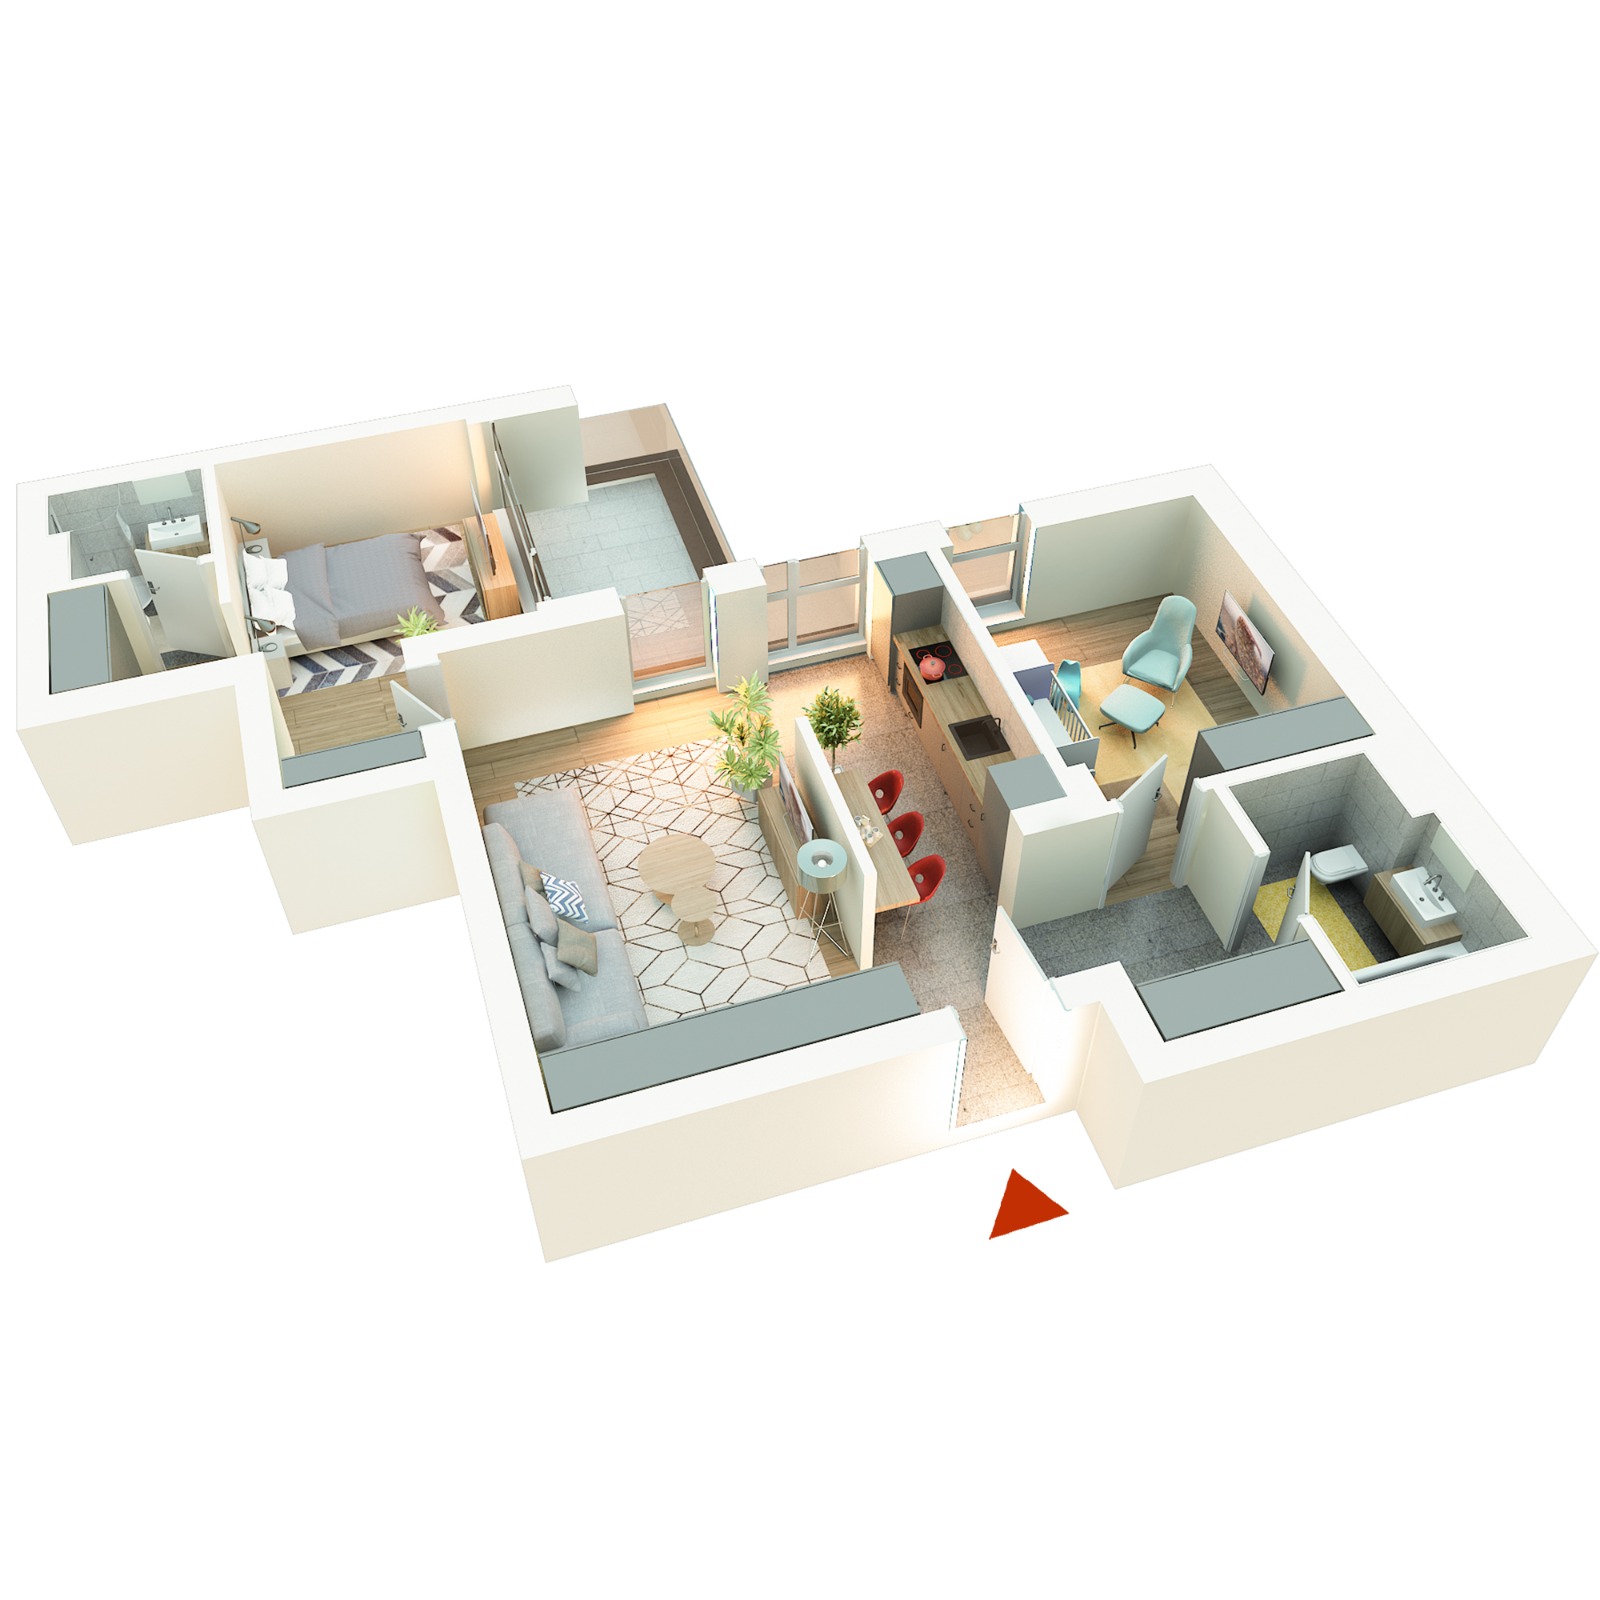 Apartament 3 camere tip 3F5 | Terasă | Etaj 5,6 | Corp C1, C2 | Faza 3